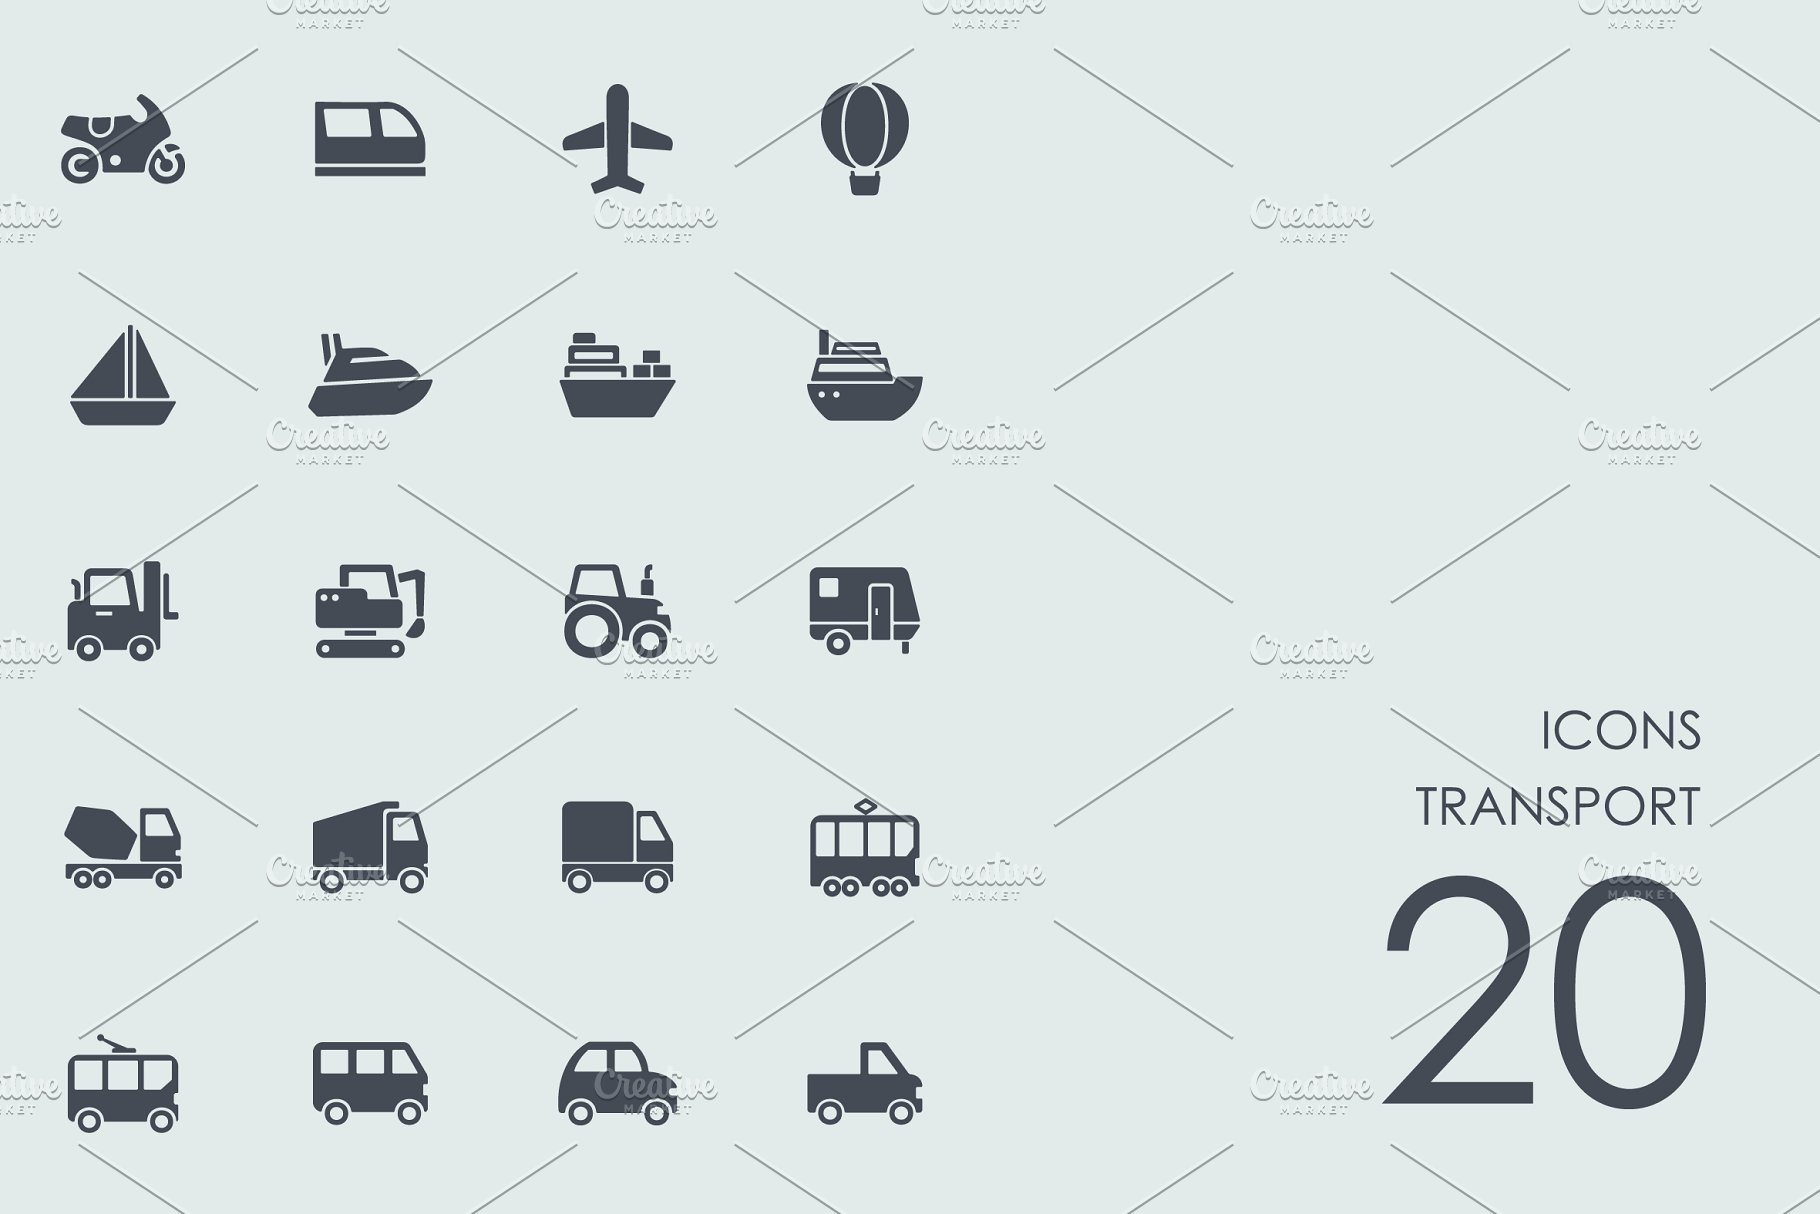 交通图标 Transport icons #92508